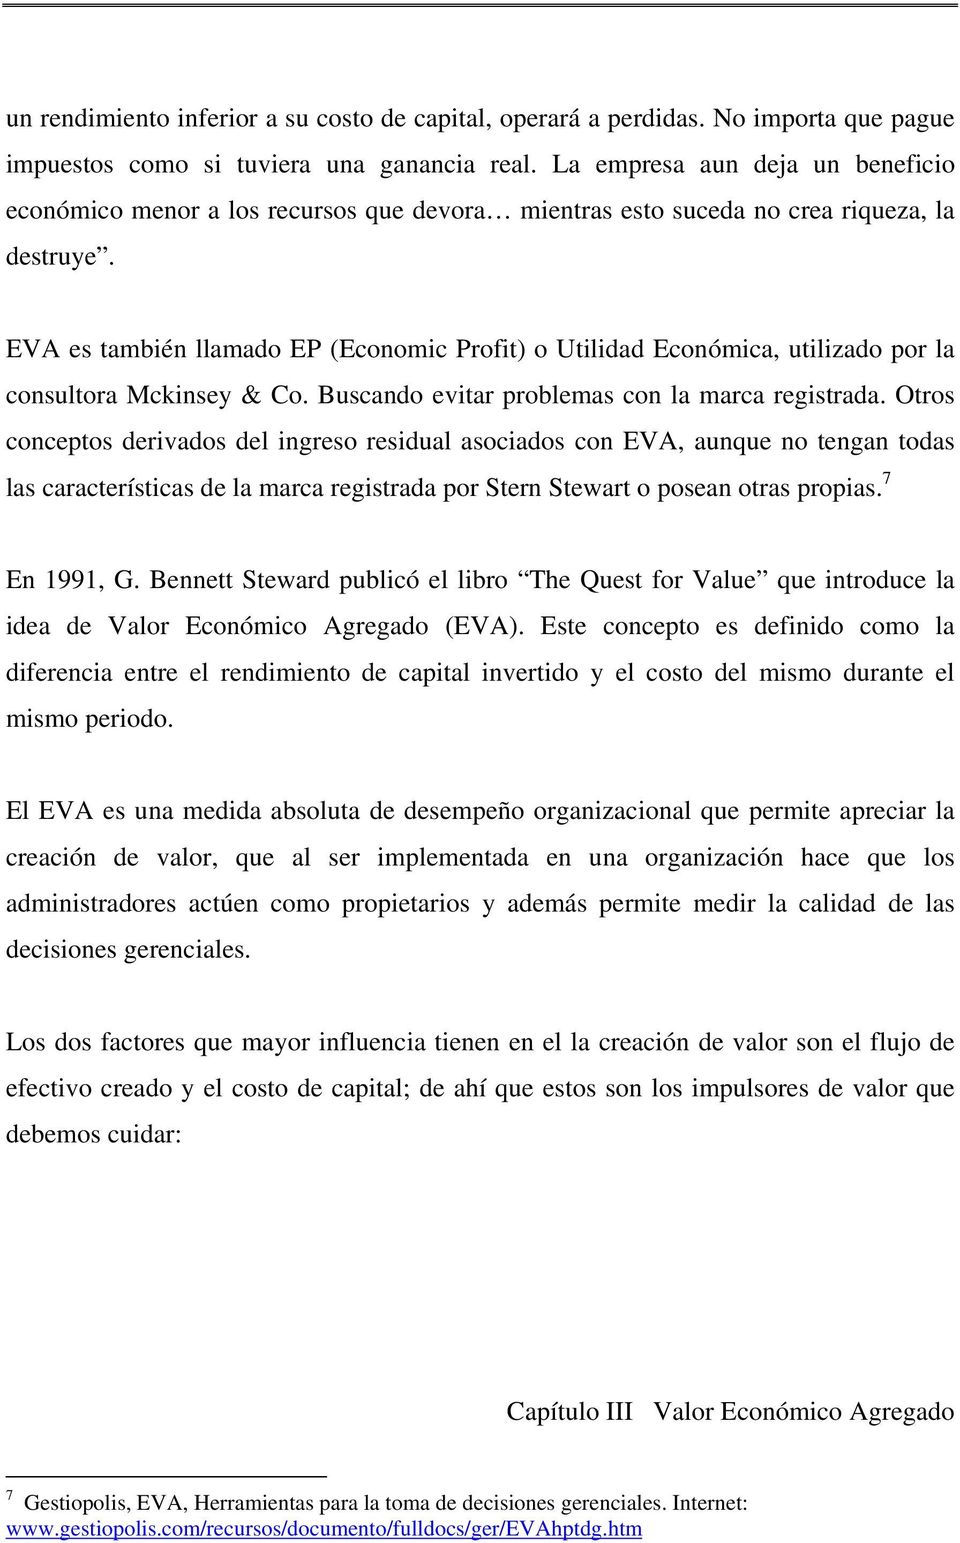 EVA es también llamado EP (Economic Profit) o Utilidad Económica, utilizado por la consultora Mckinsey & Co. Buscando evitar problemas con la marca registrada.